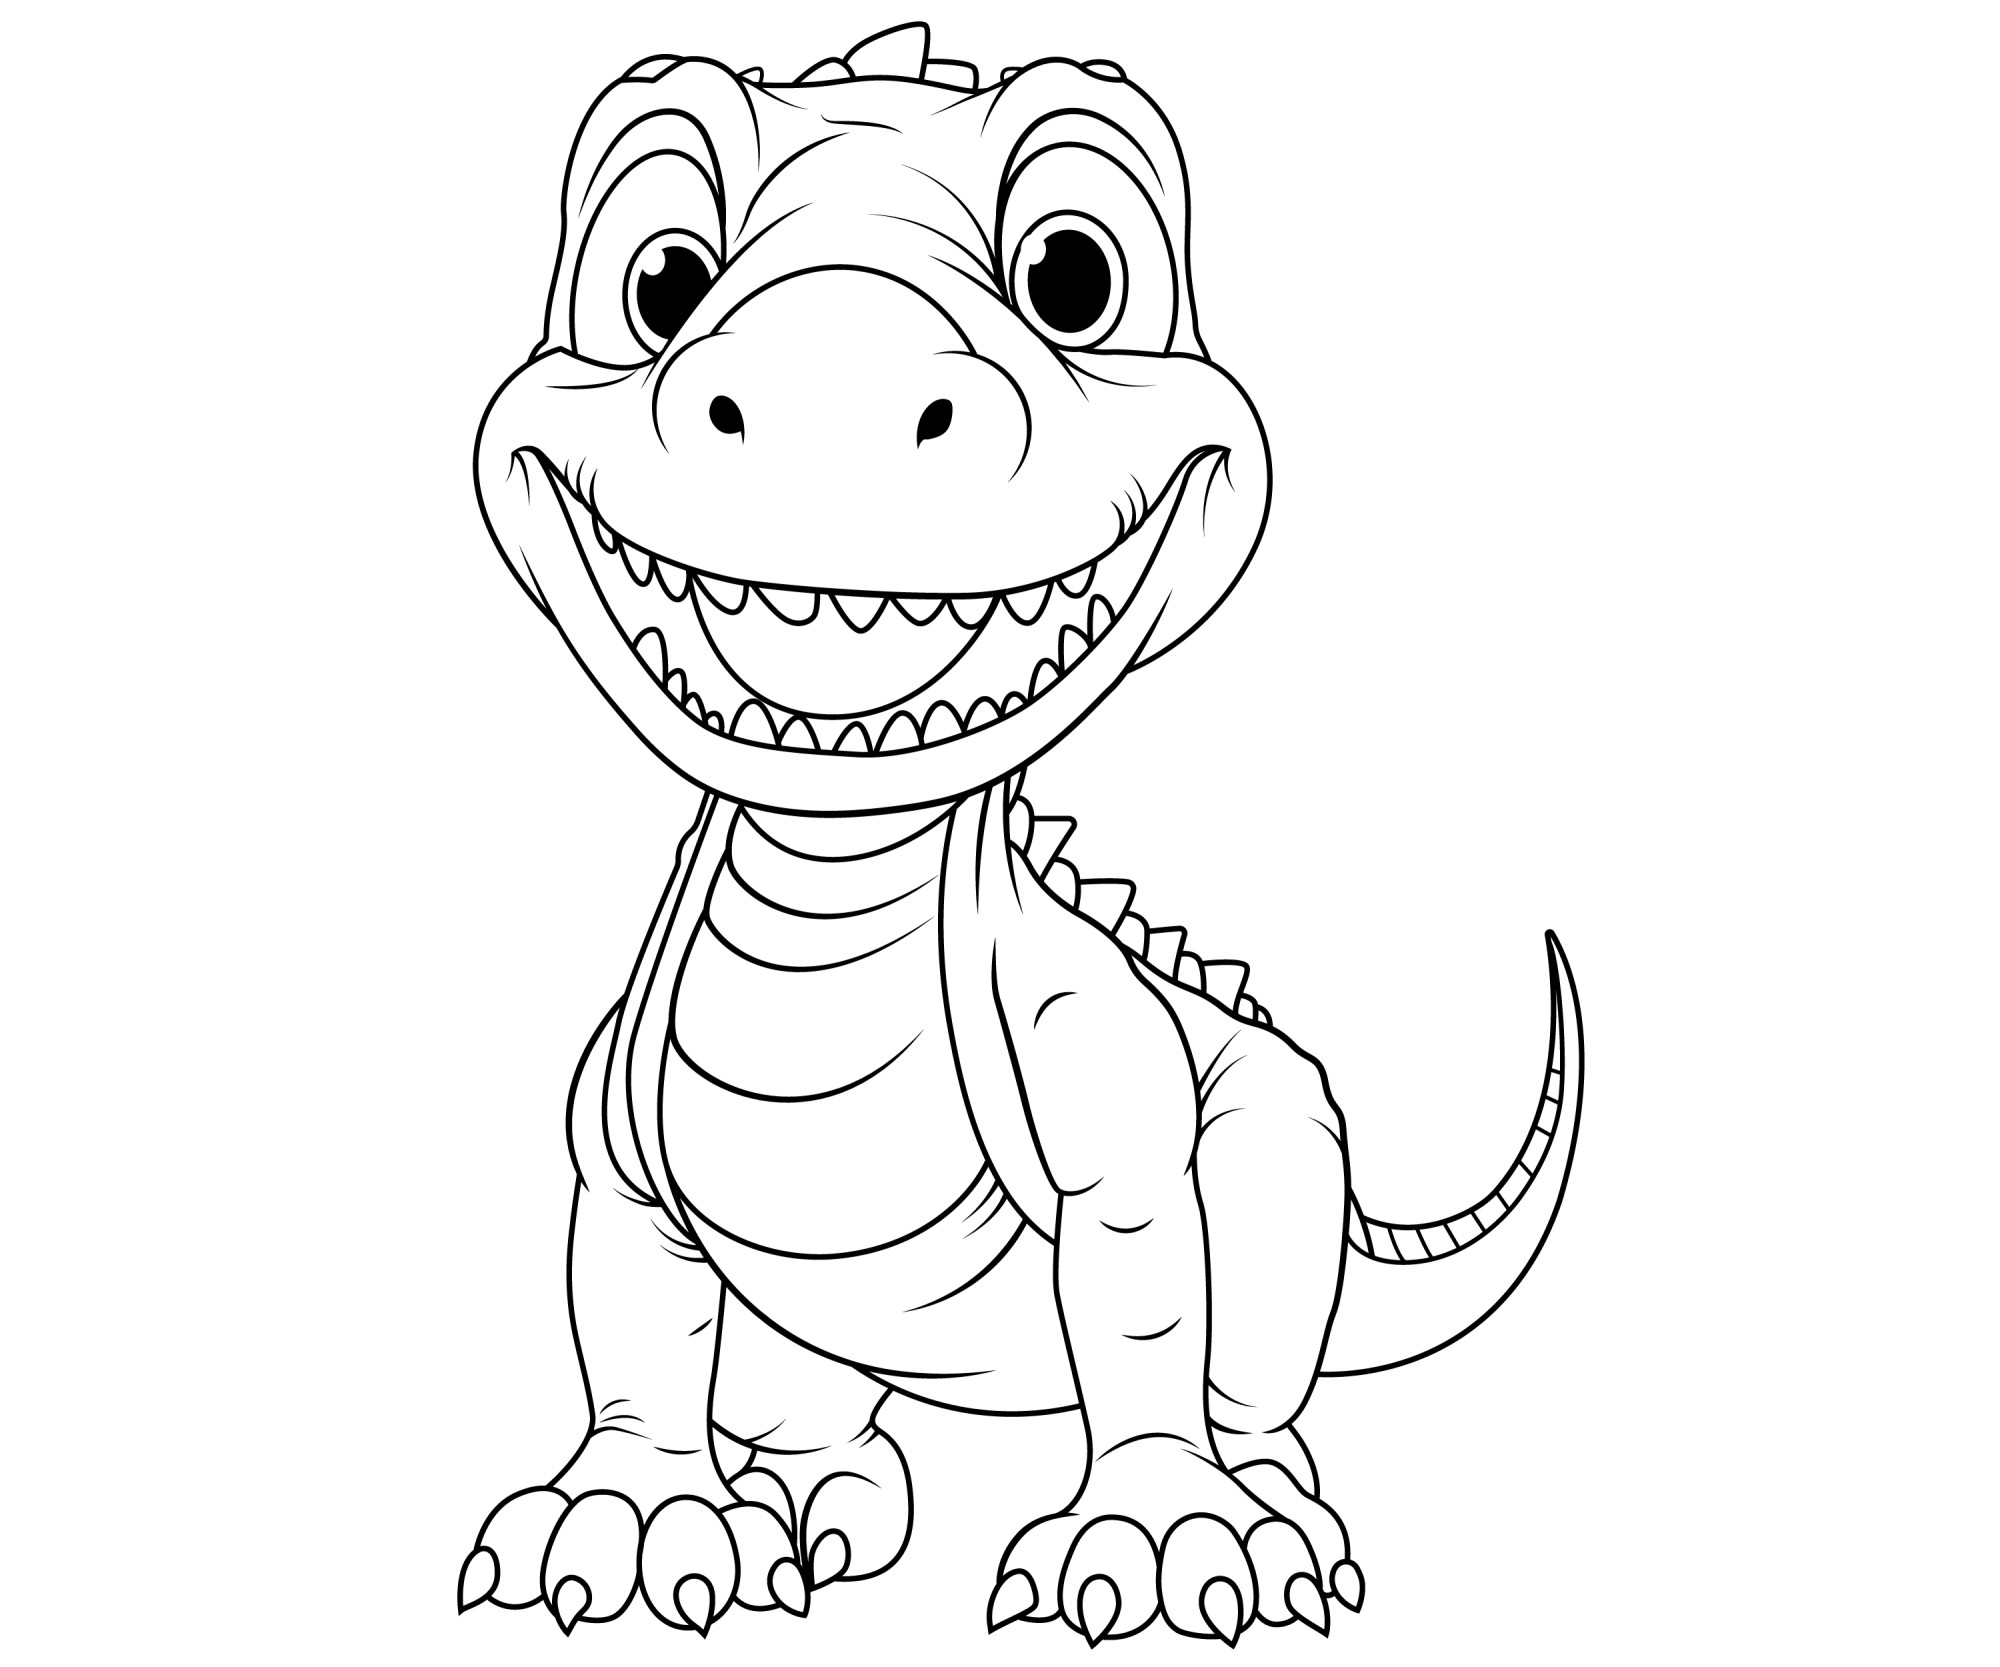 Раскраска для детей: хороший динозавр улыбается